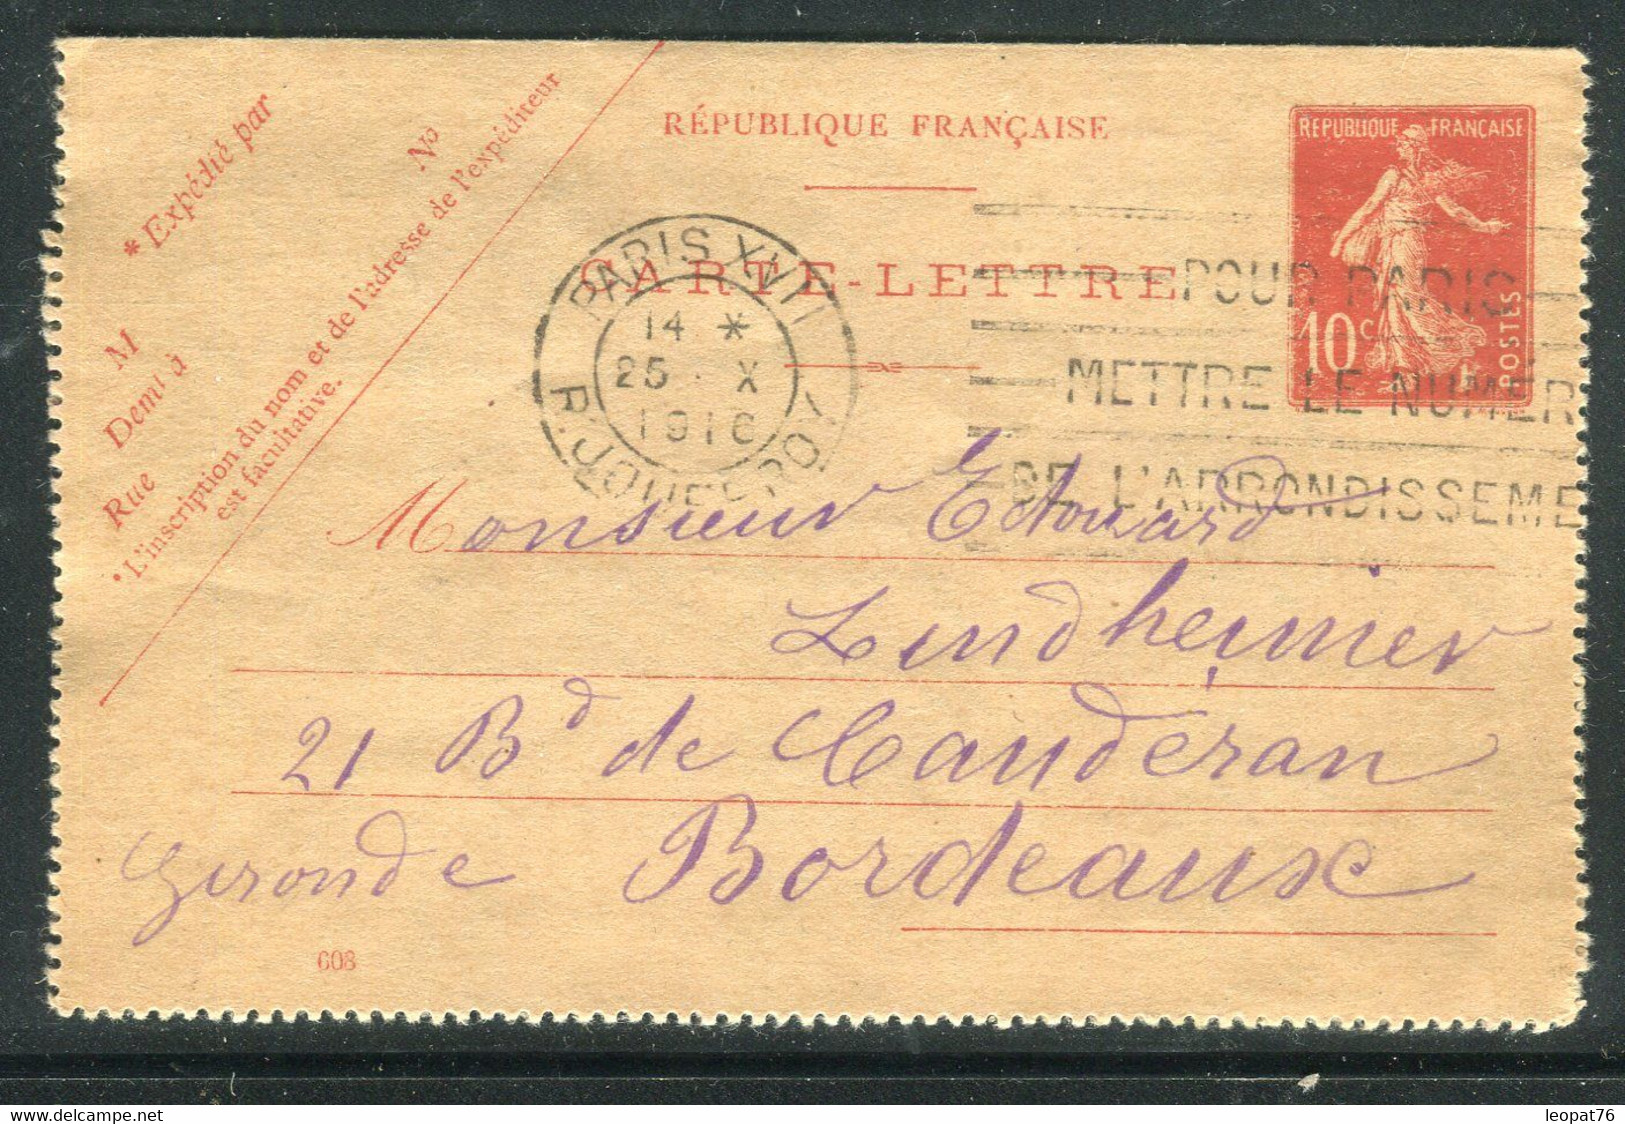 Entier Postal Carte Lettre Type Semeuse De Paris Pour Bordeaux En 1916 - Réf F16 - Cartes-lettres